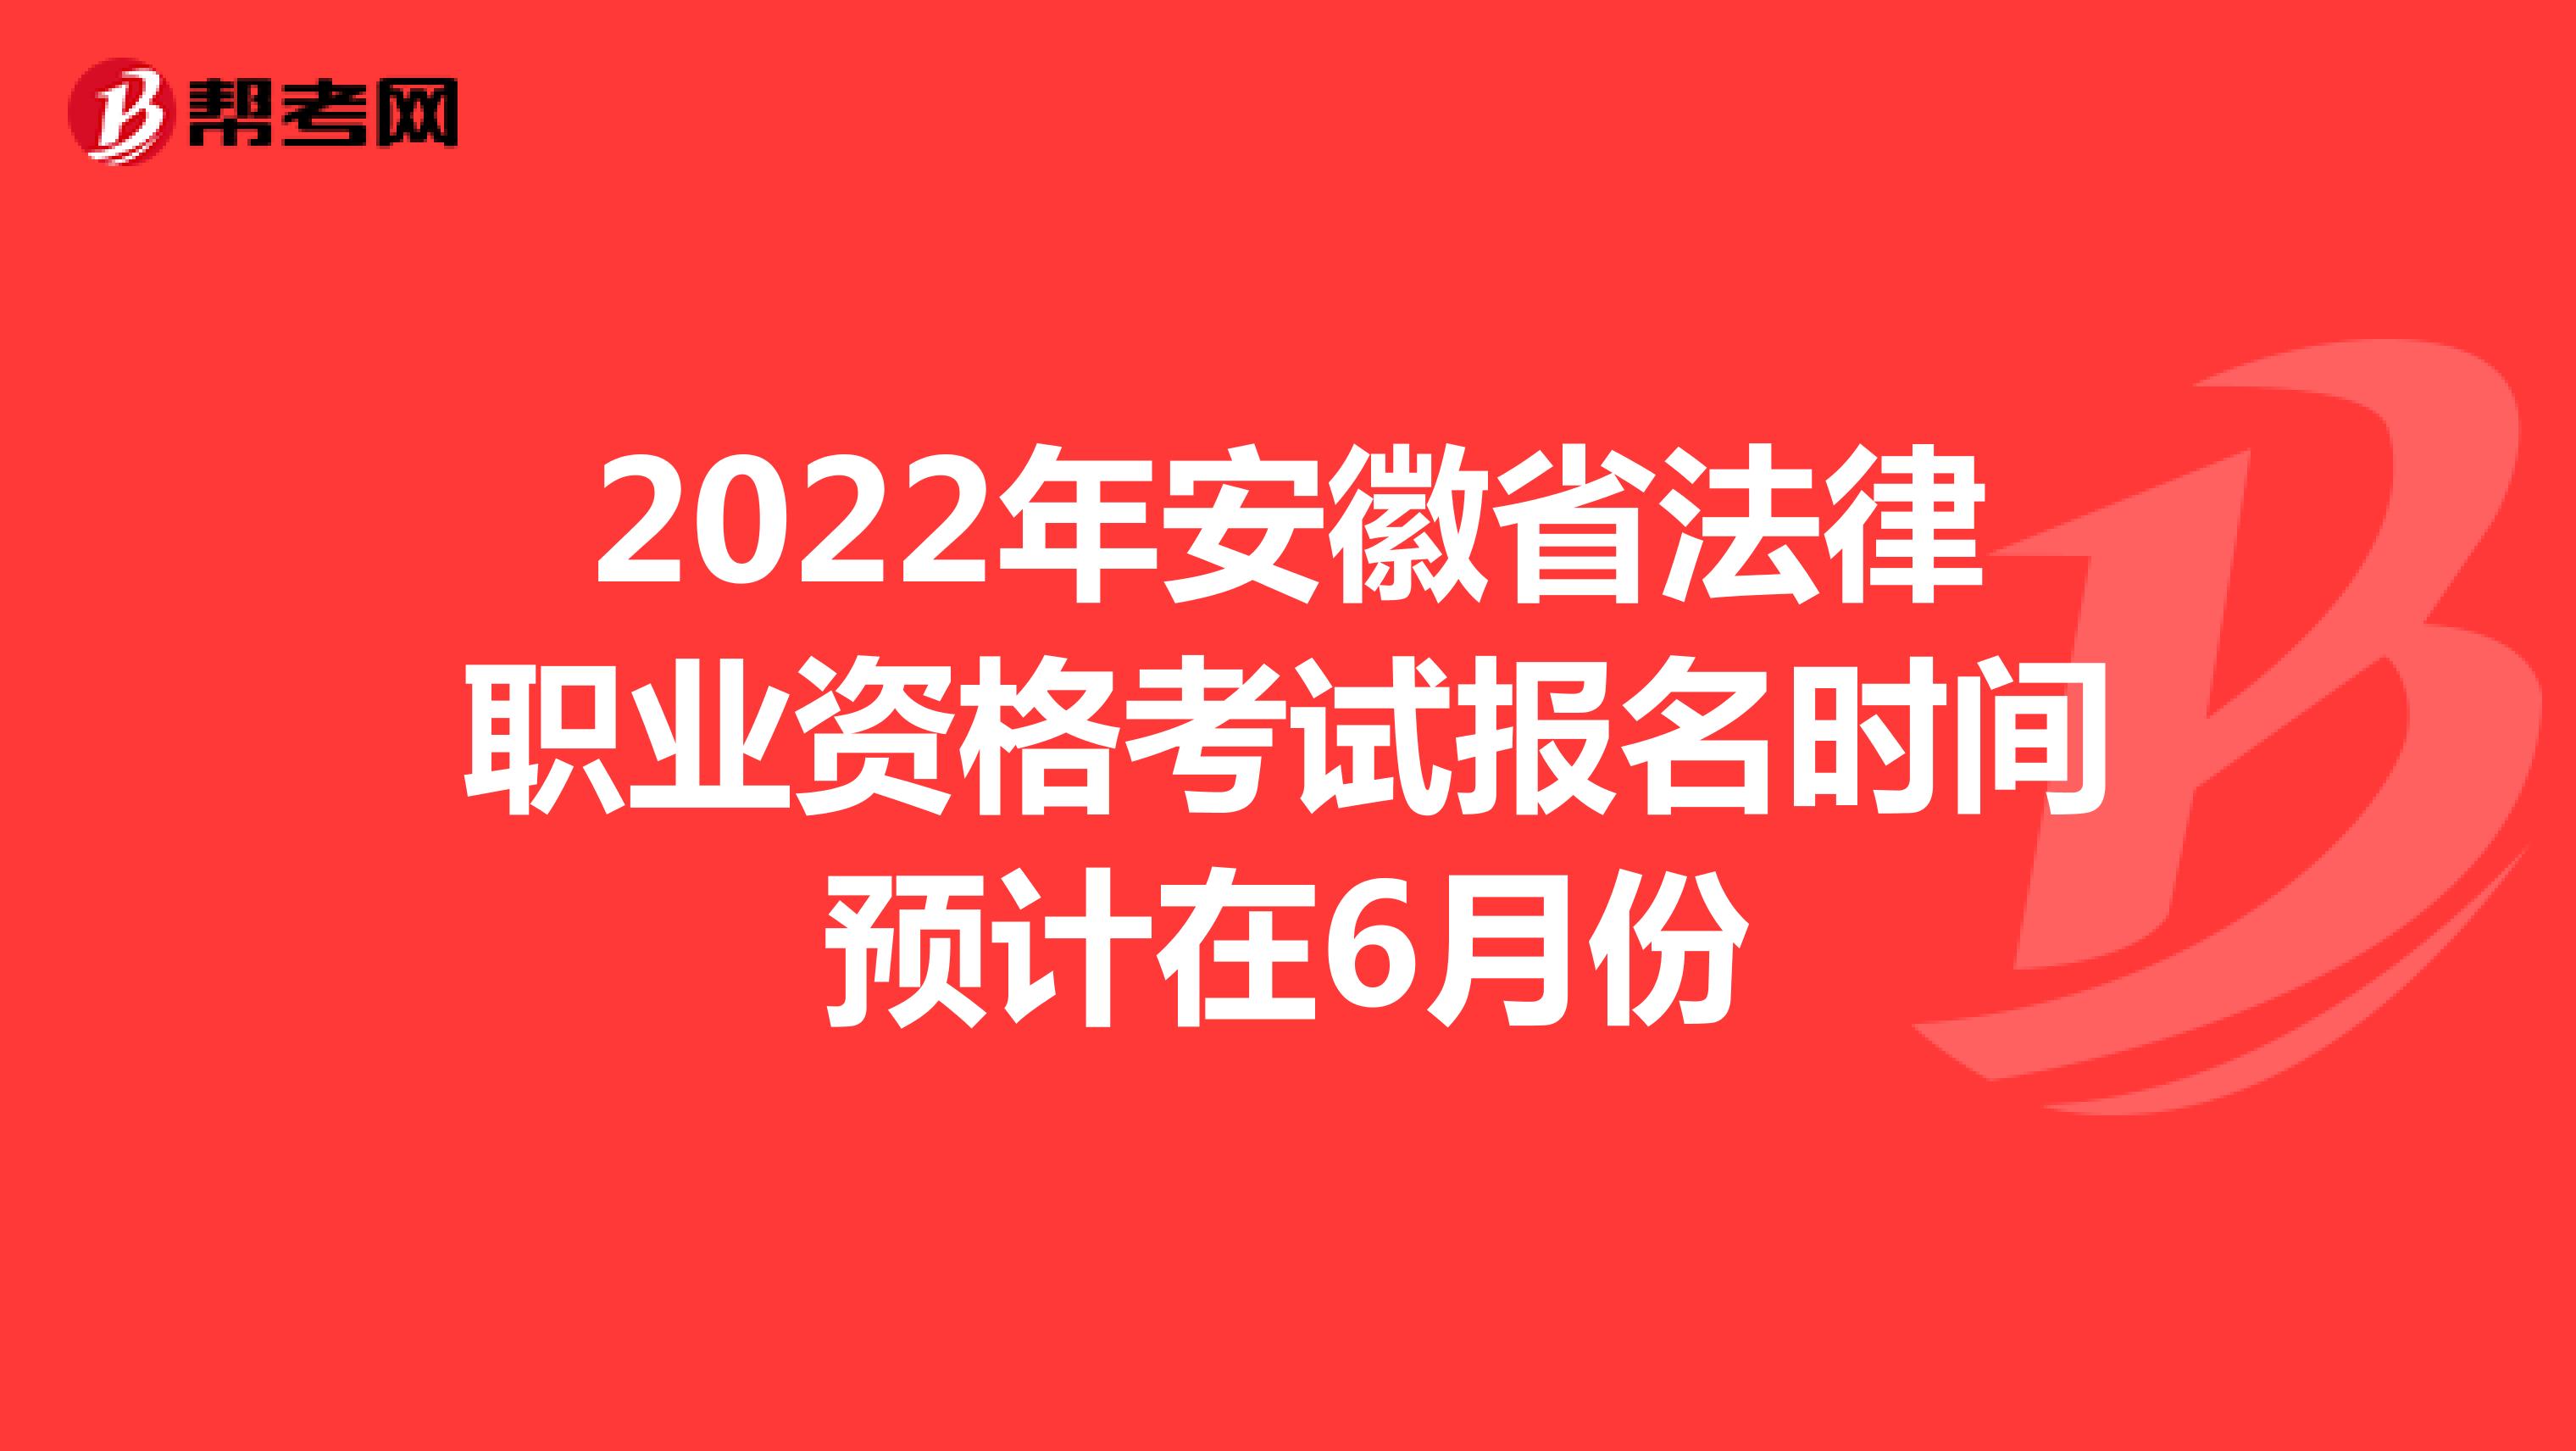 2022年安徽省法律职业资格考试报名时间预计在6月份